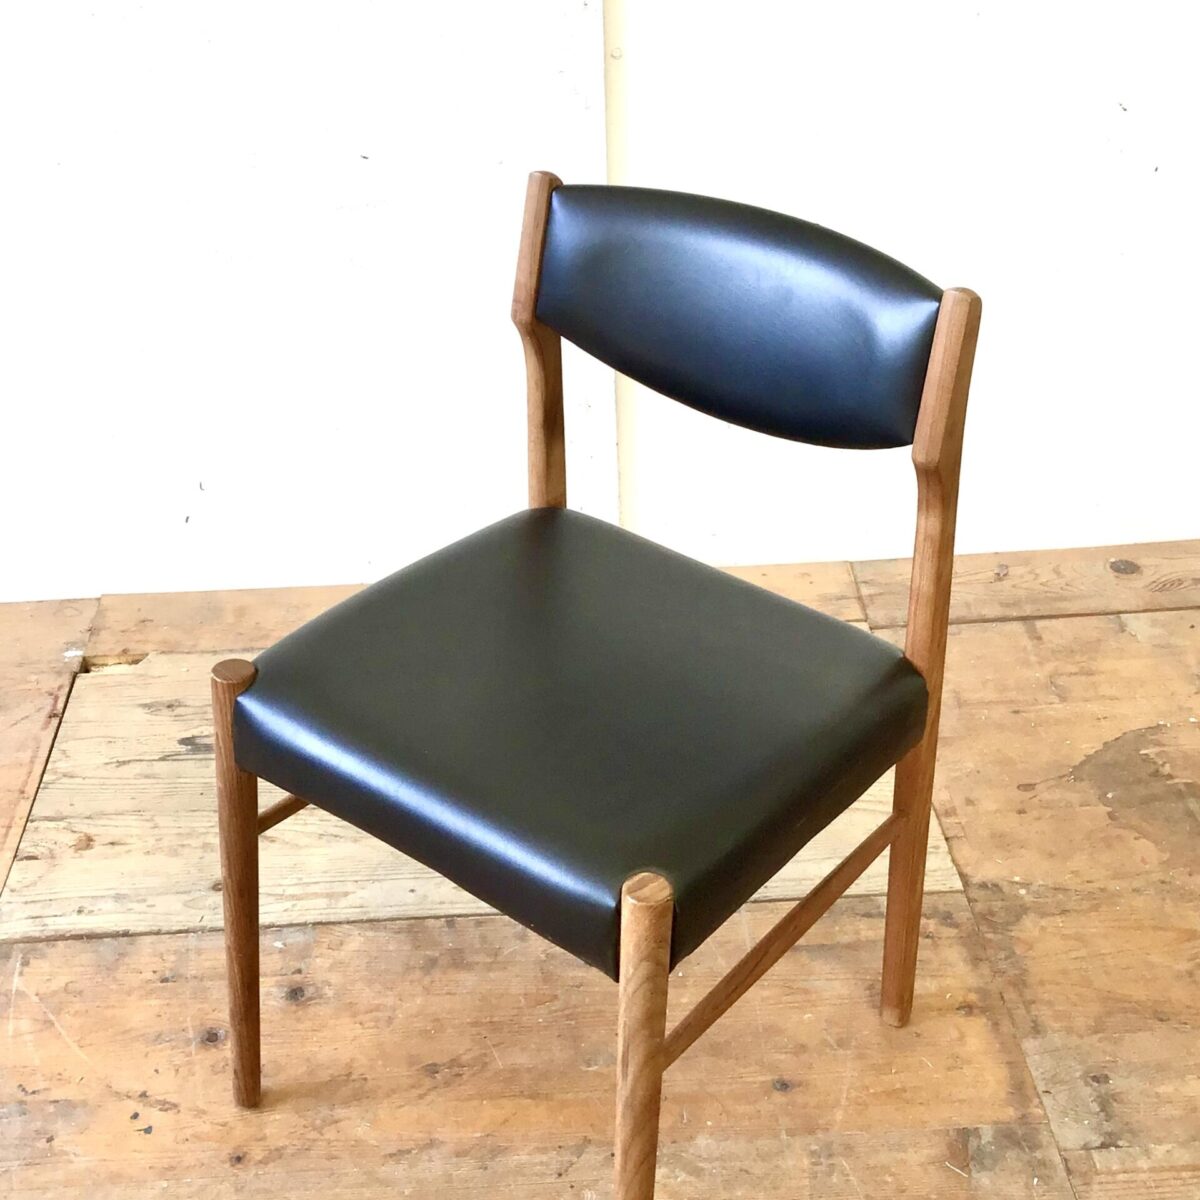 6 Midcentury Esszimmer Stühle von SAX Denmark. Stabiler guter Zustand, Lehne und Sitzfläche schwarzes Kunstleder oder Vinyl. Zwei haben kleinere Risse beim Bezug an der Lehne. Ist auf den Fotos ersichtlich. 